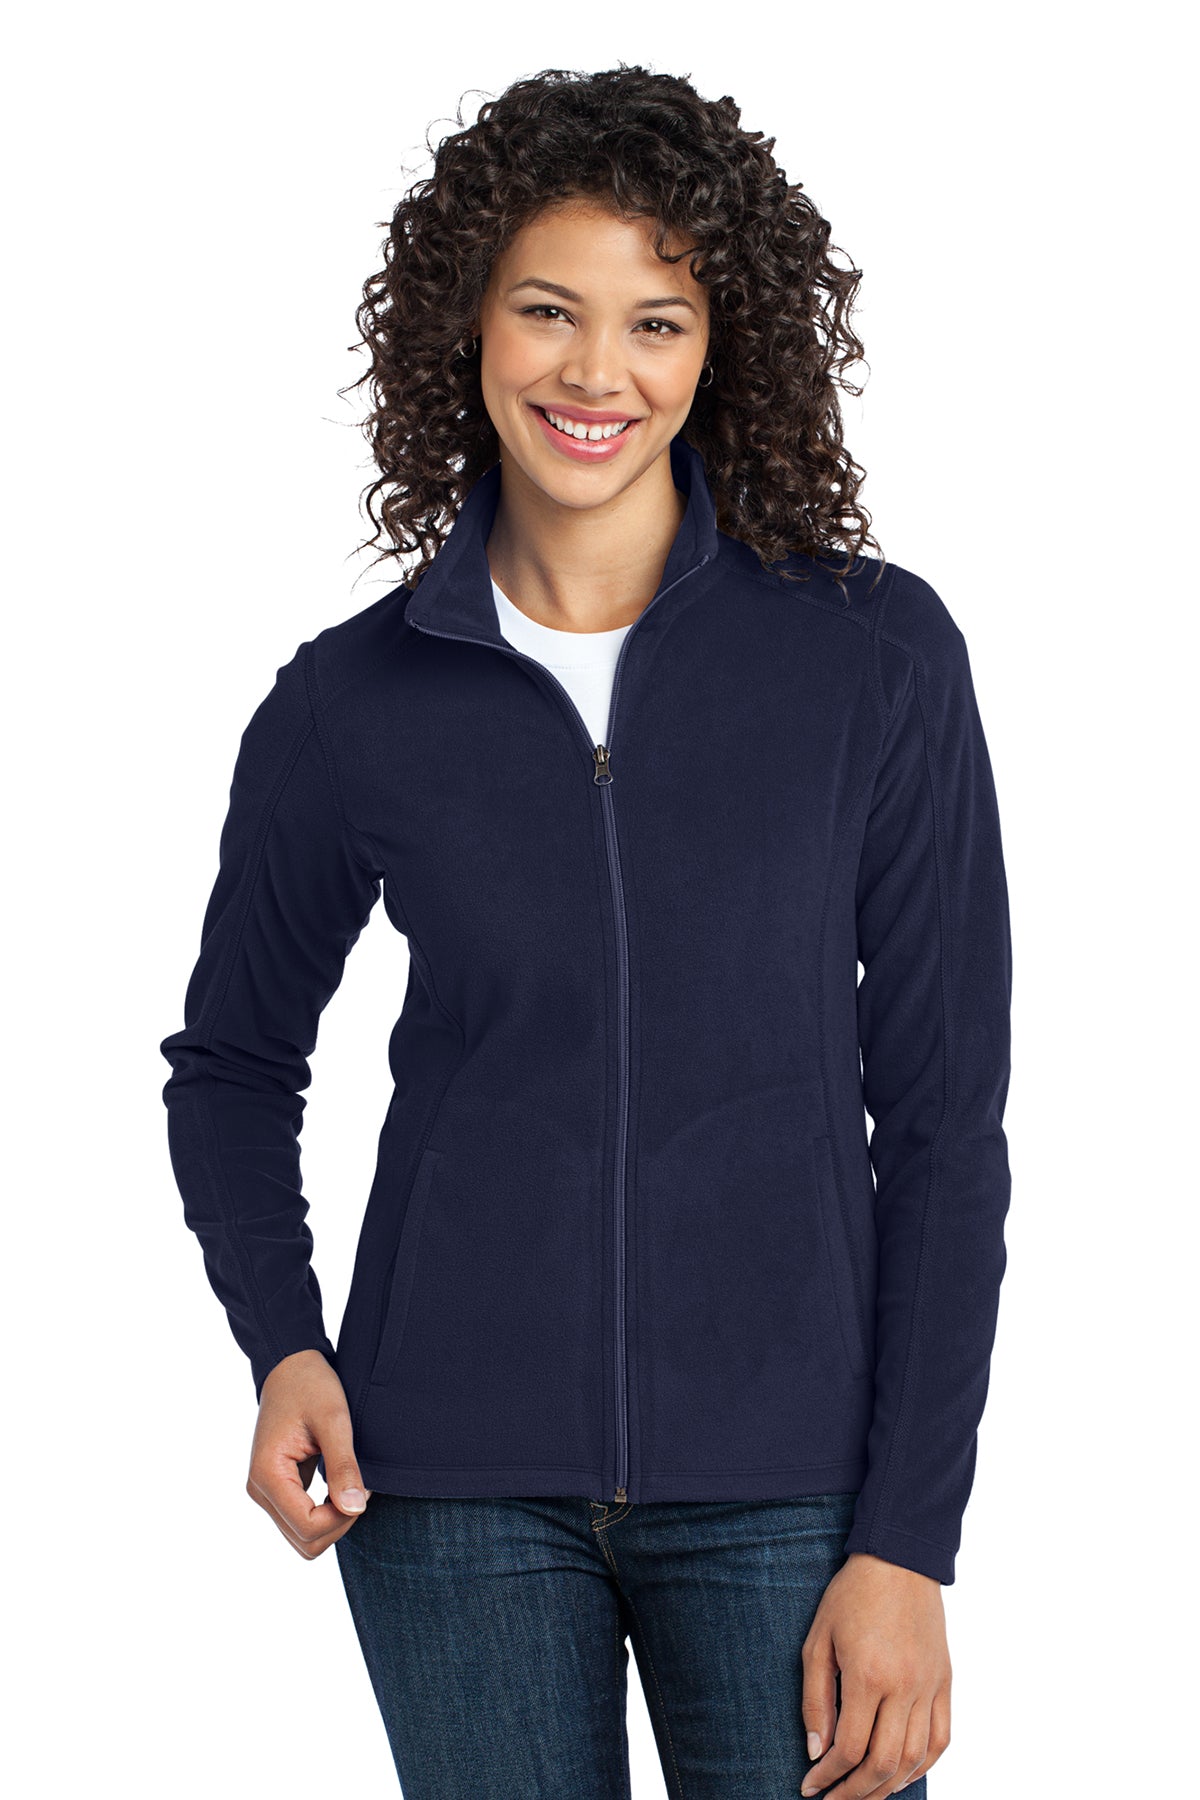 Port Authority L223 Women's Microfleece Zip Jacket True Navy